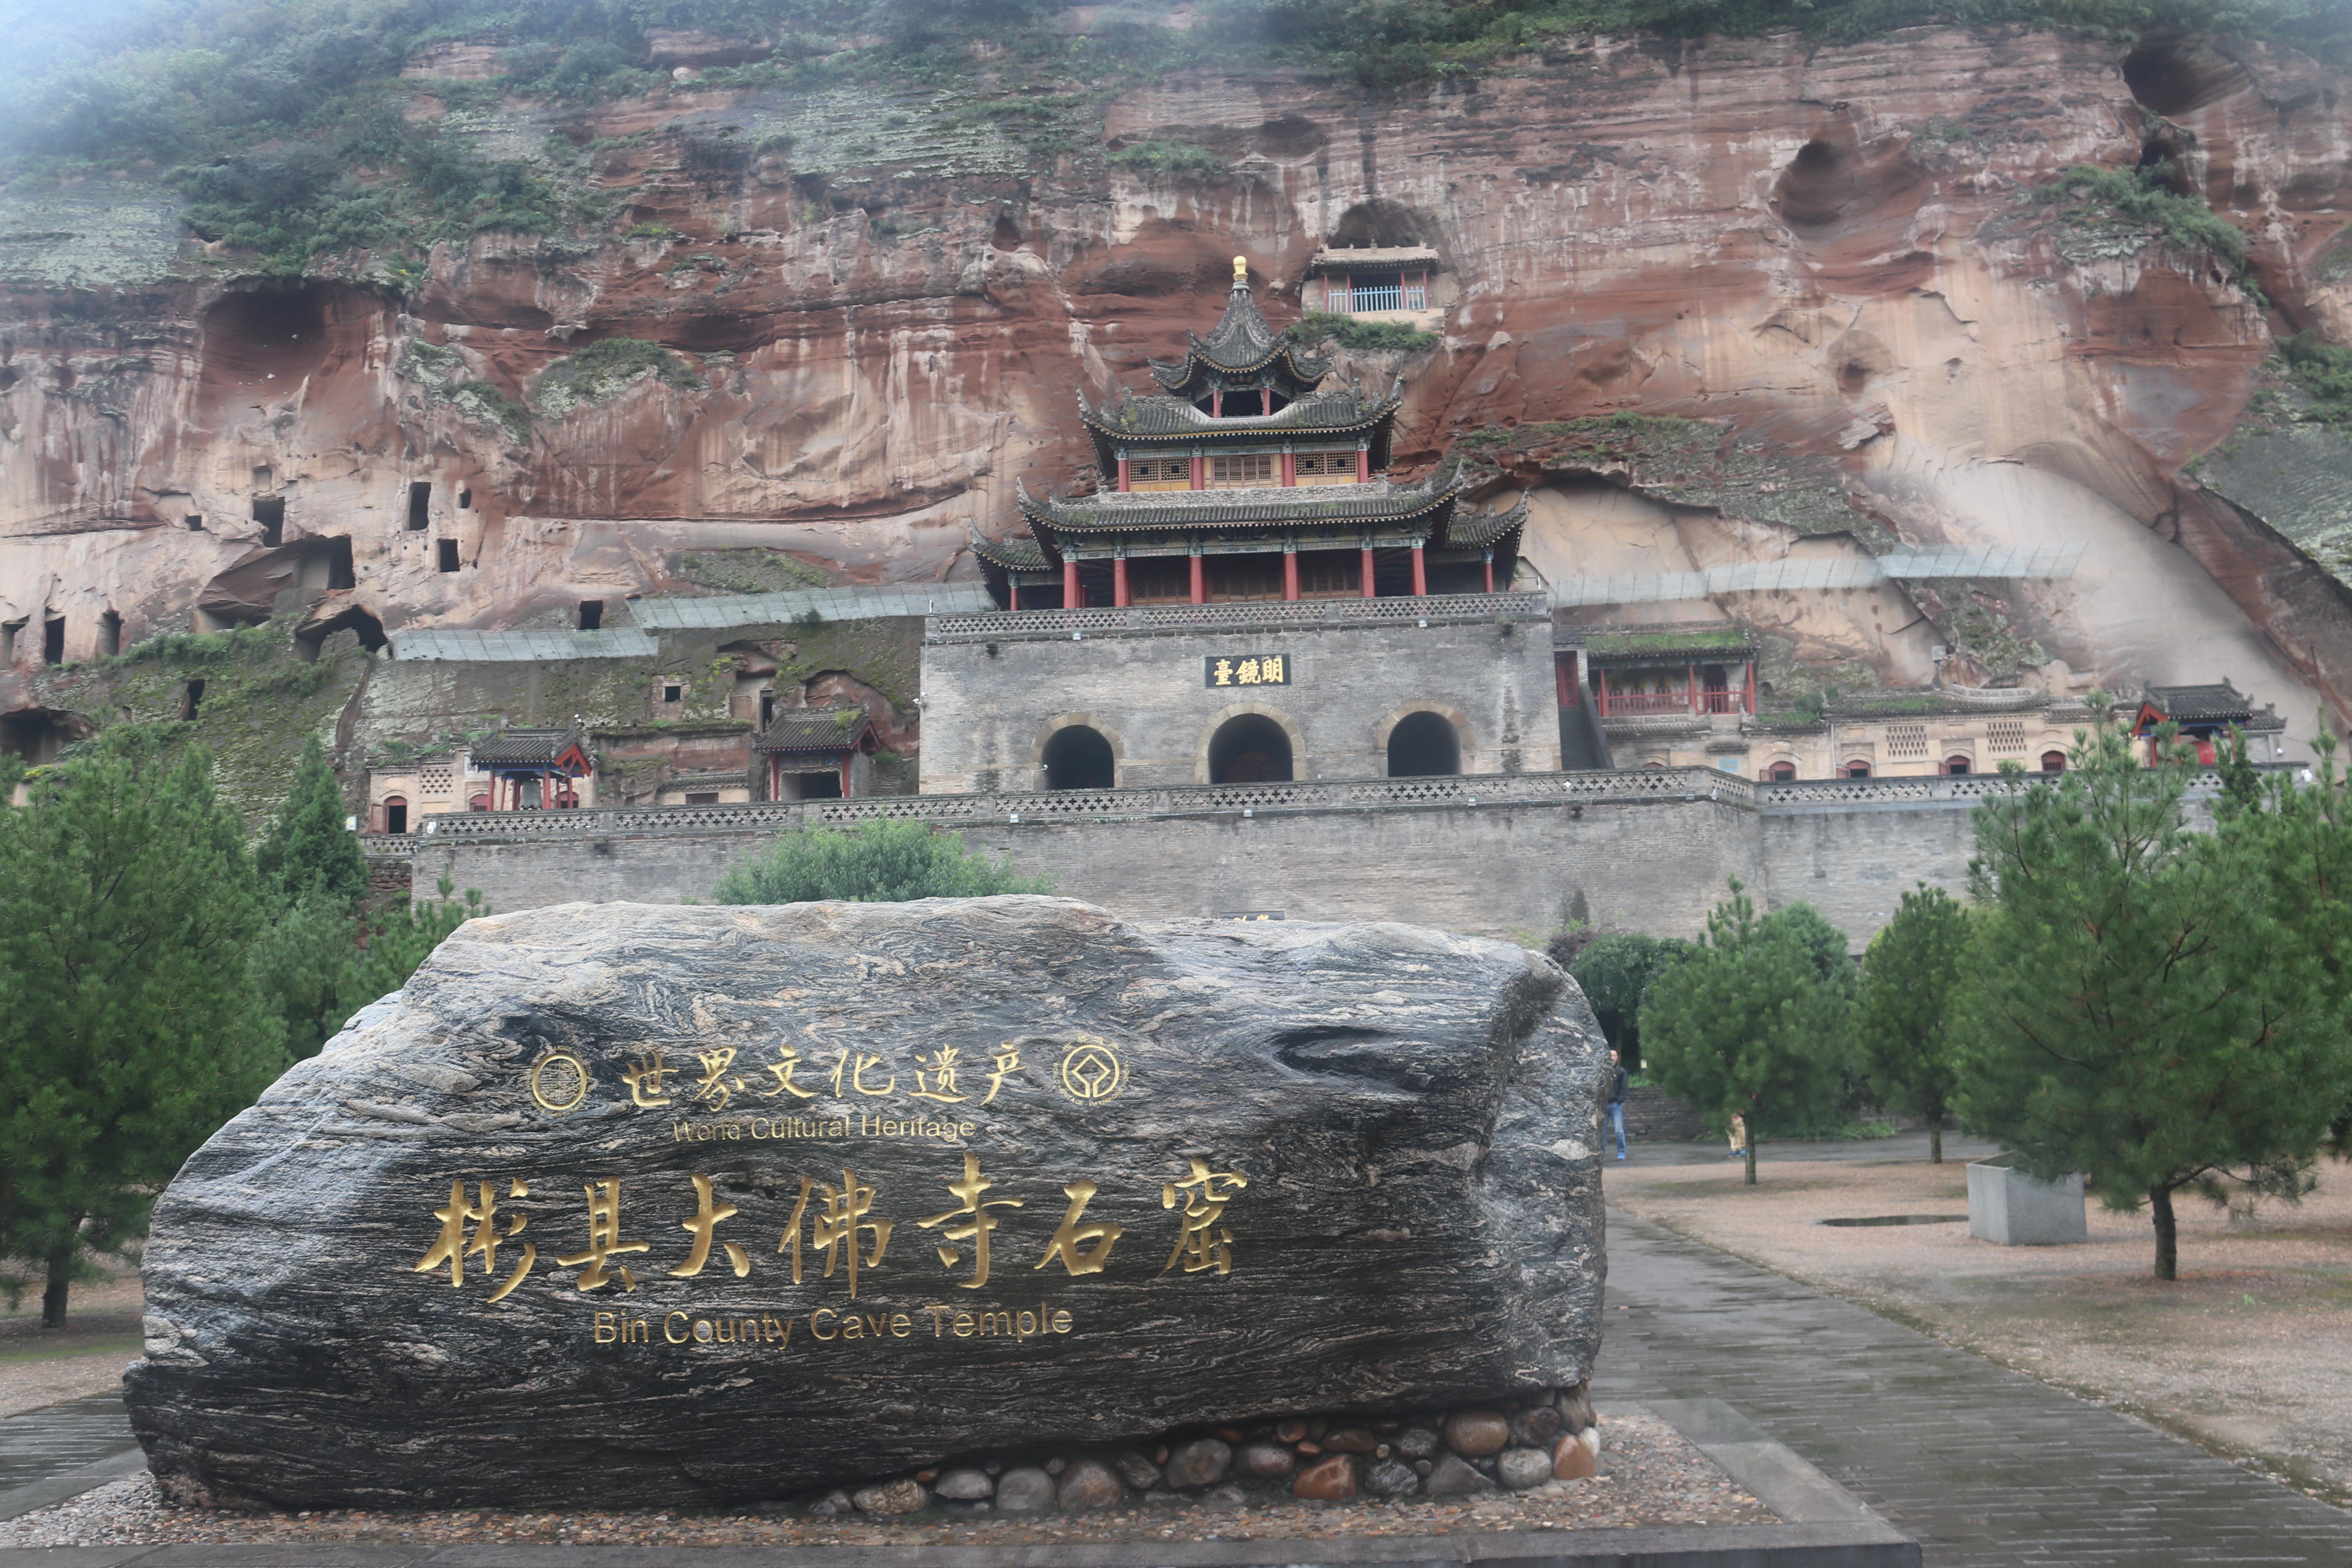 雷行记位于彬州市的大佛寺曾被誉为关中第一奇观